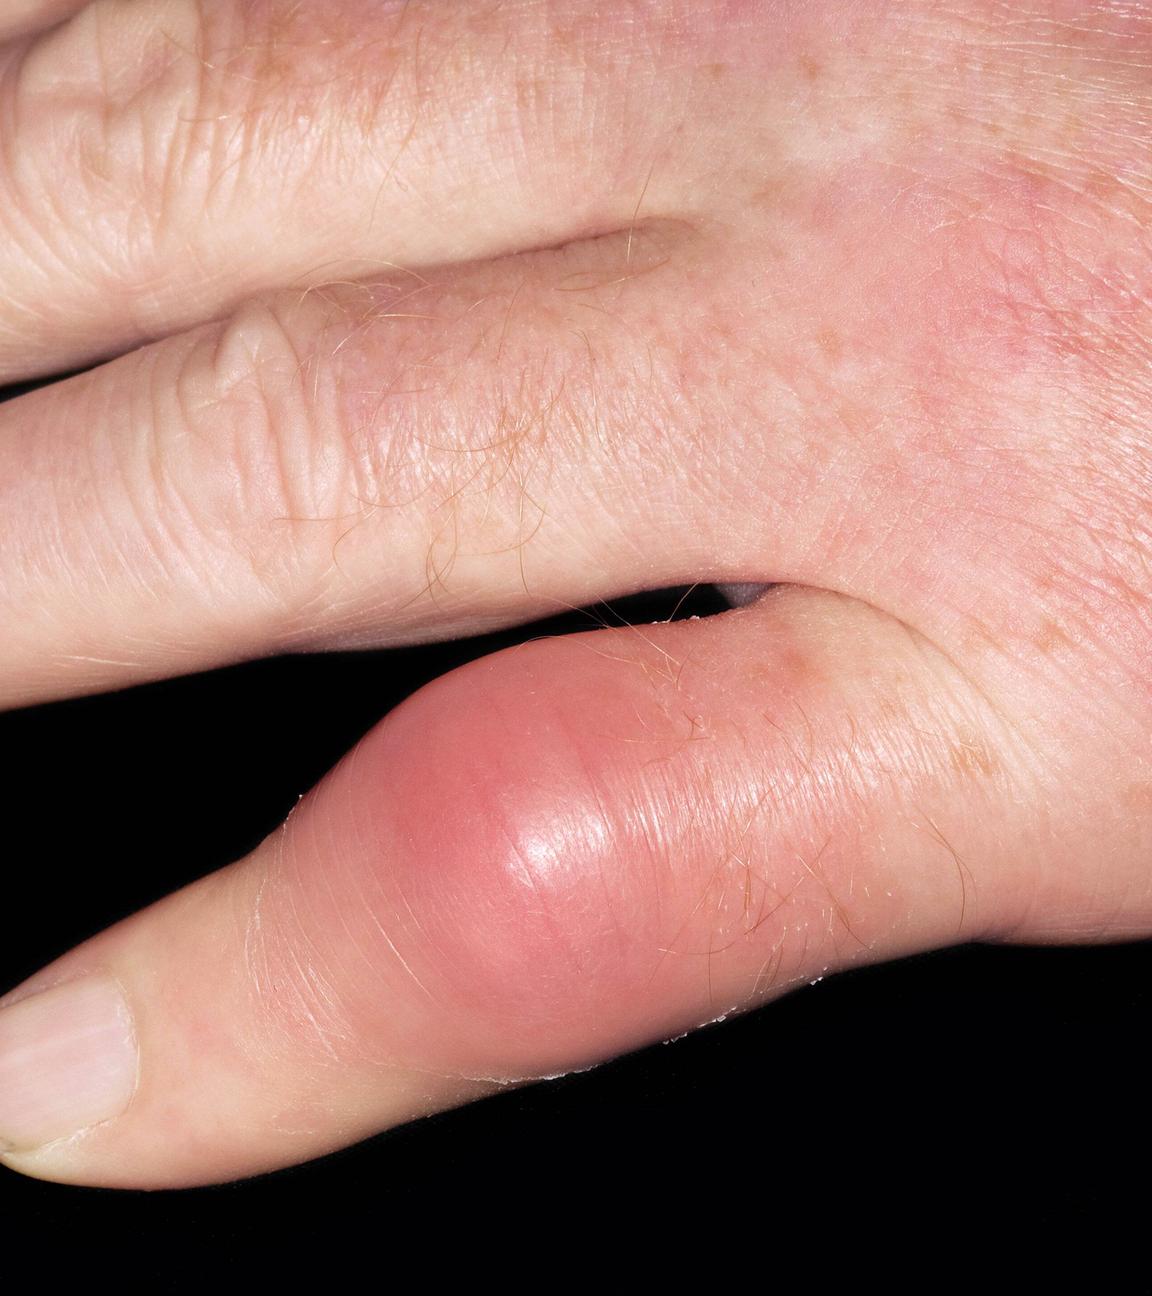 Die Hand eines Mannes mit Gicht, aufgenommen am 27.08.2014